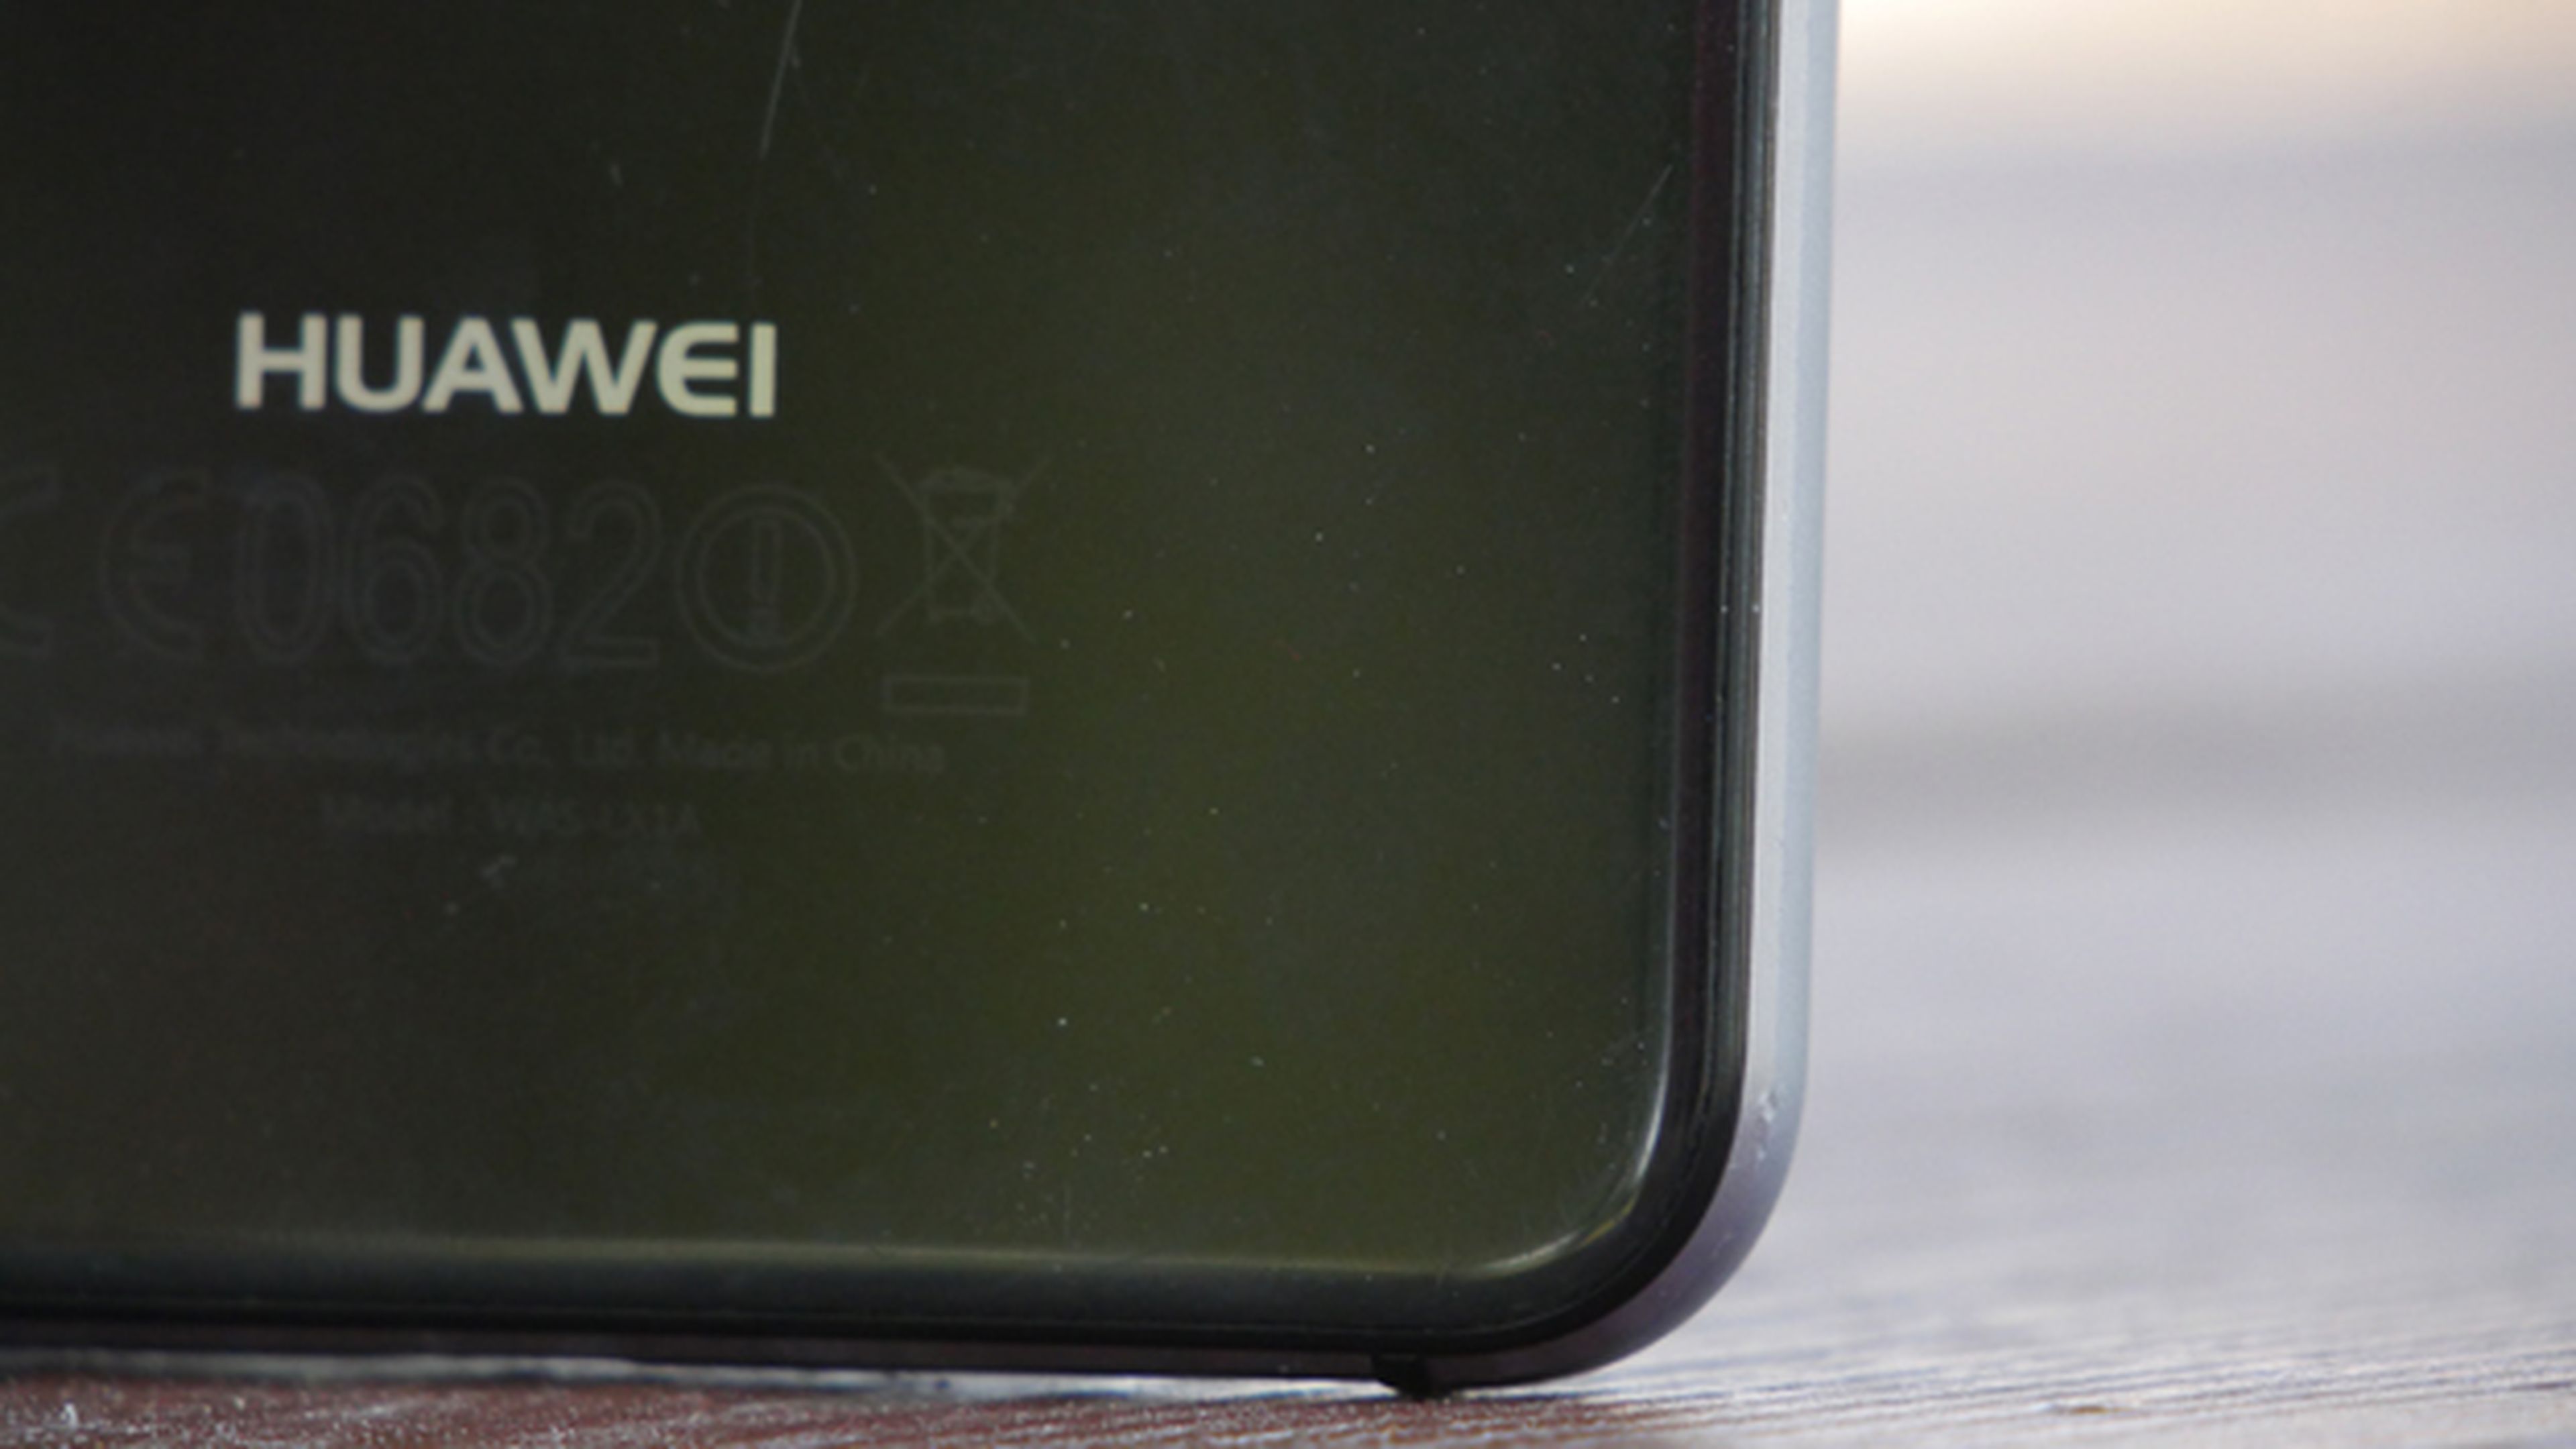 Si vas a comprar algún móvil de Huawei de gama media, el P10 Lite es la mejor opción